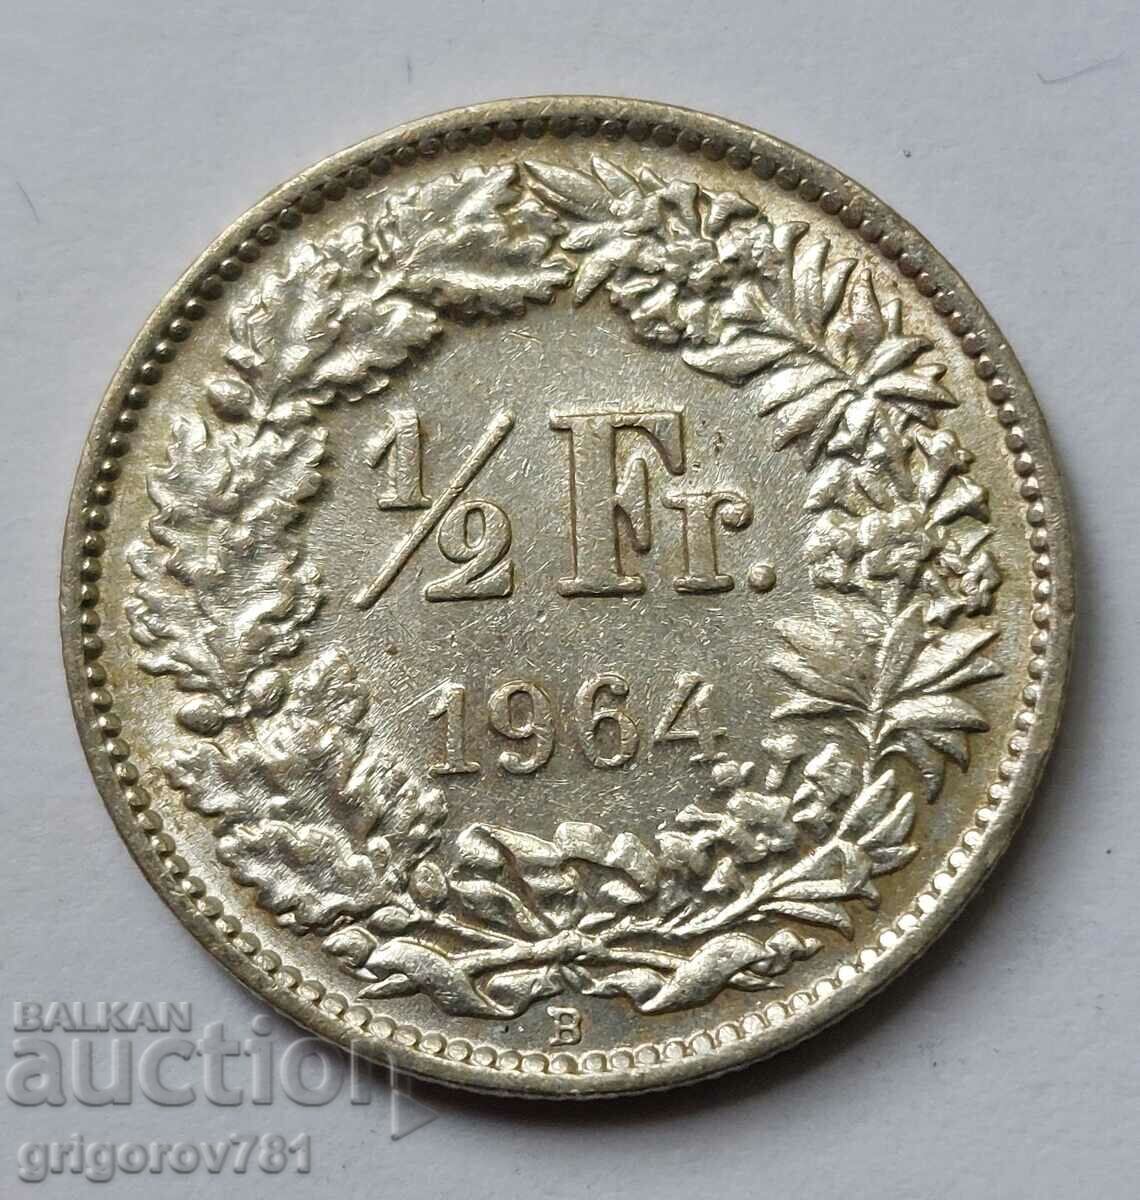 Ασημένιο φράγκο 1/2 Ελβετία 1964 Β - Ασημένιο νόμισμα #29